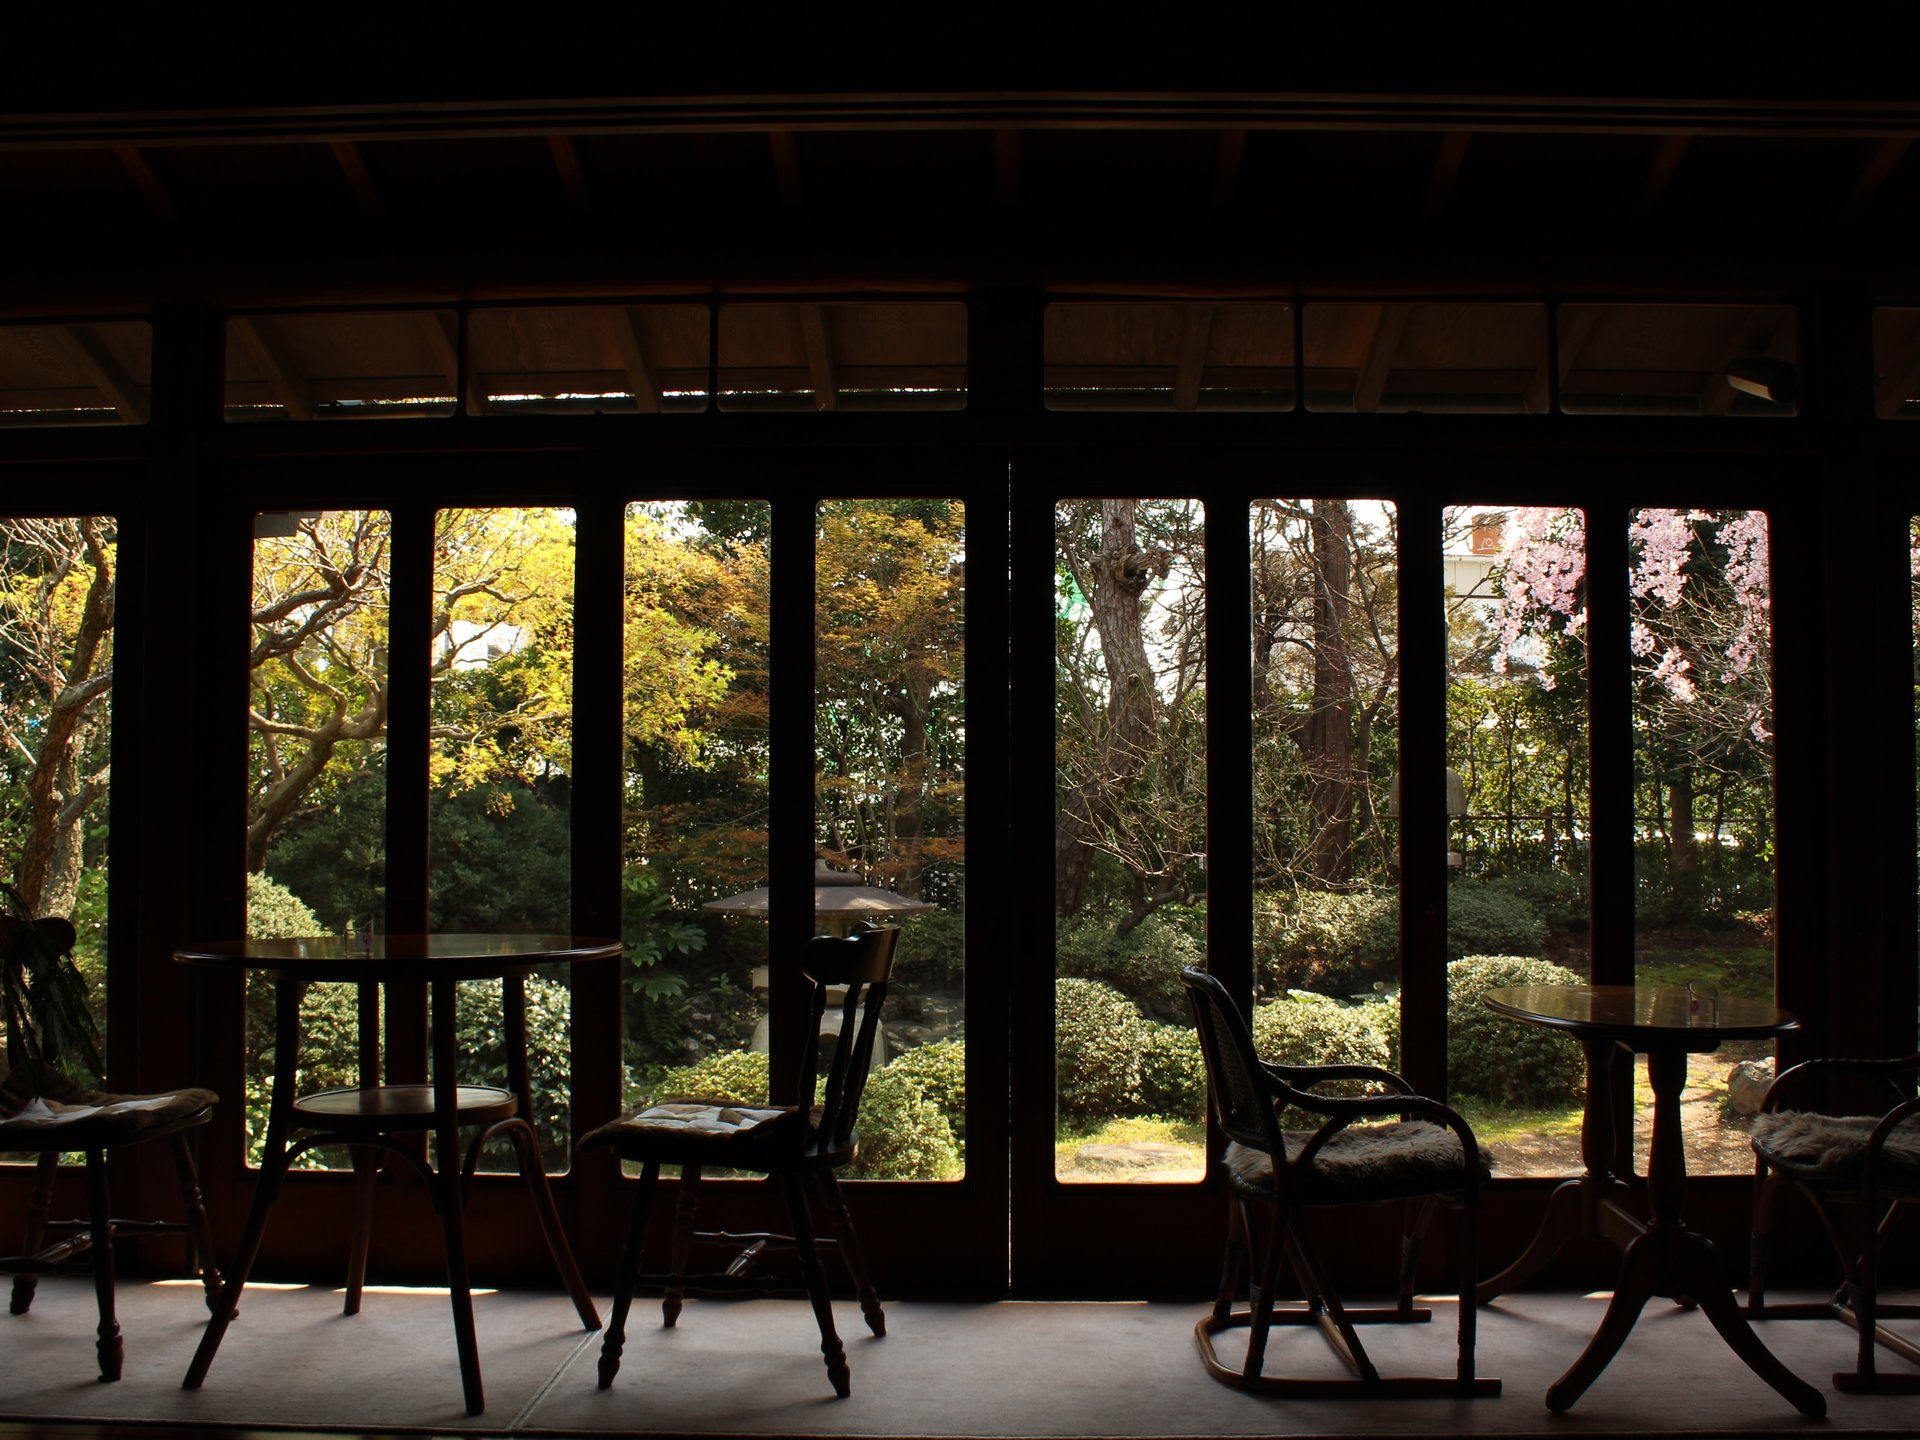 【東京厳選・隠れ家カフェ】縁側カフェで過ごす、古き良き奇跡の空間